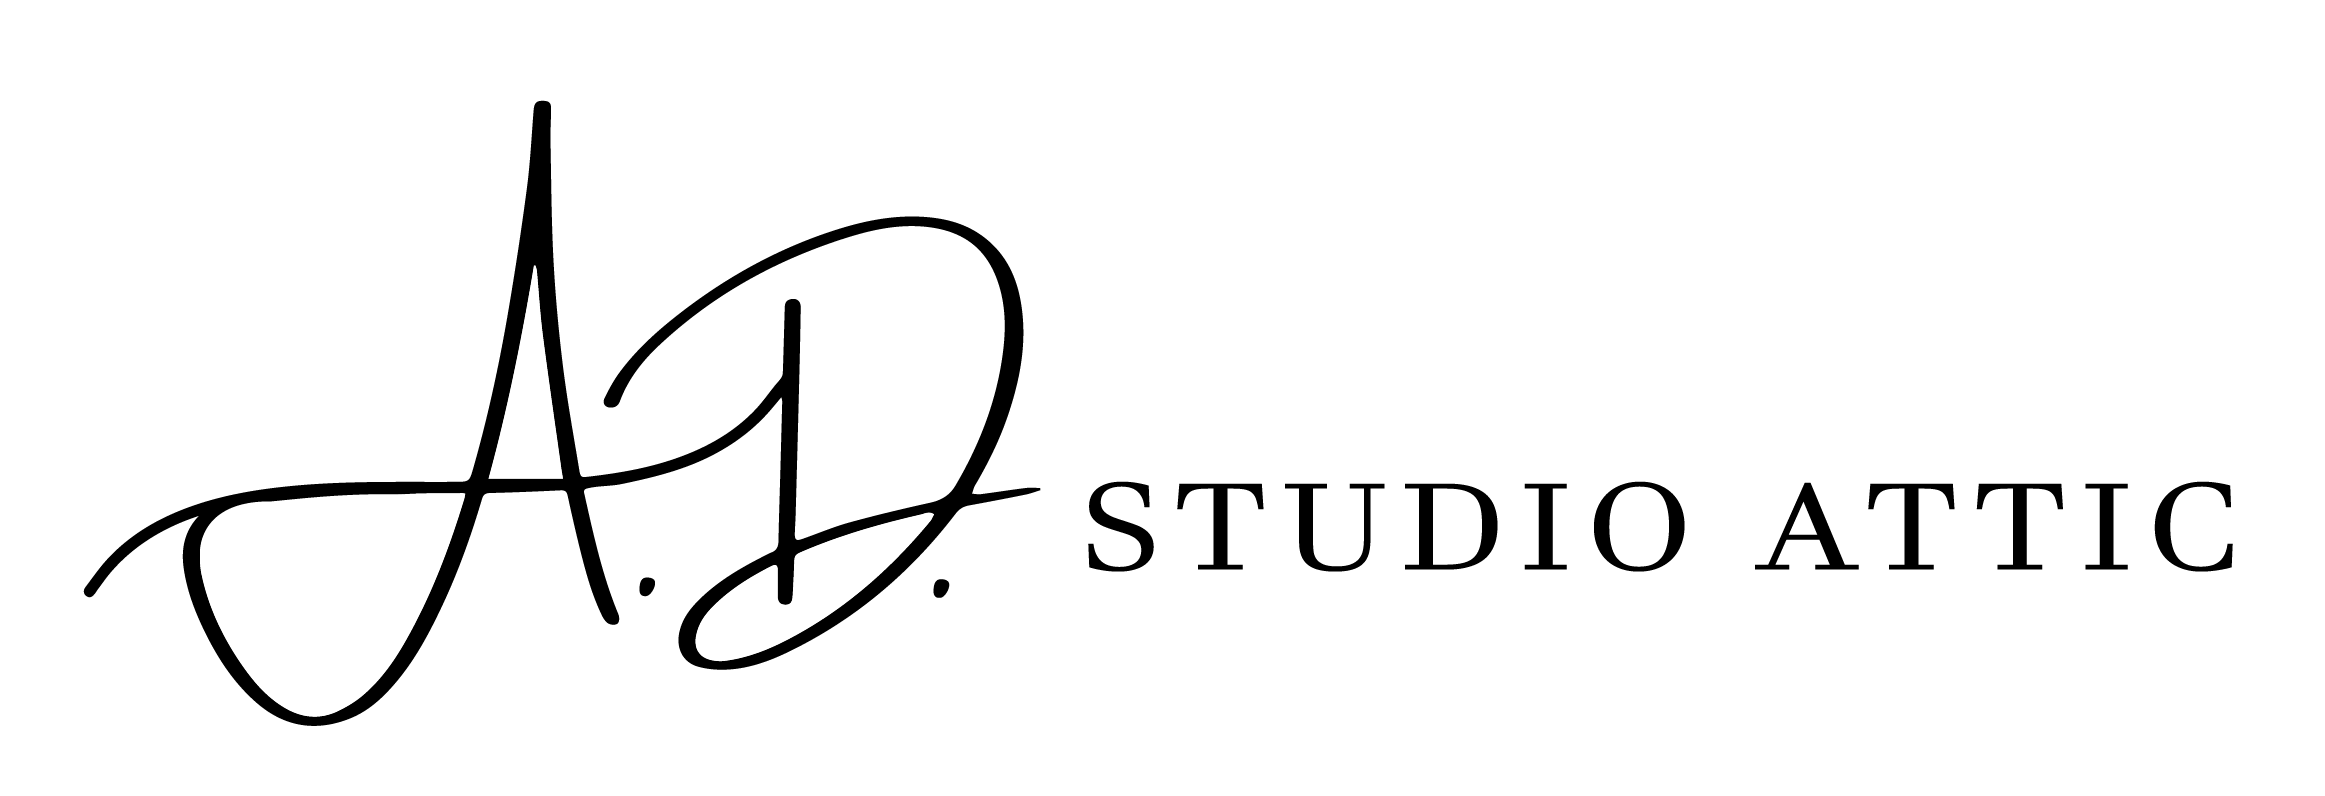 A.D. Studio Attic Logo